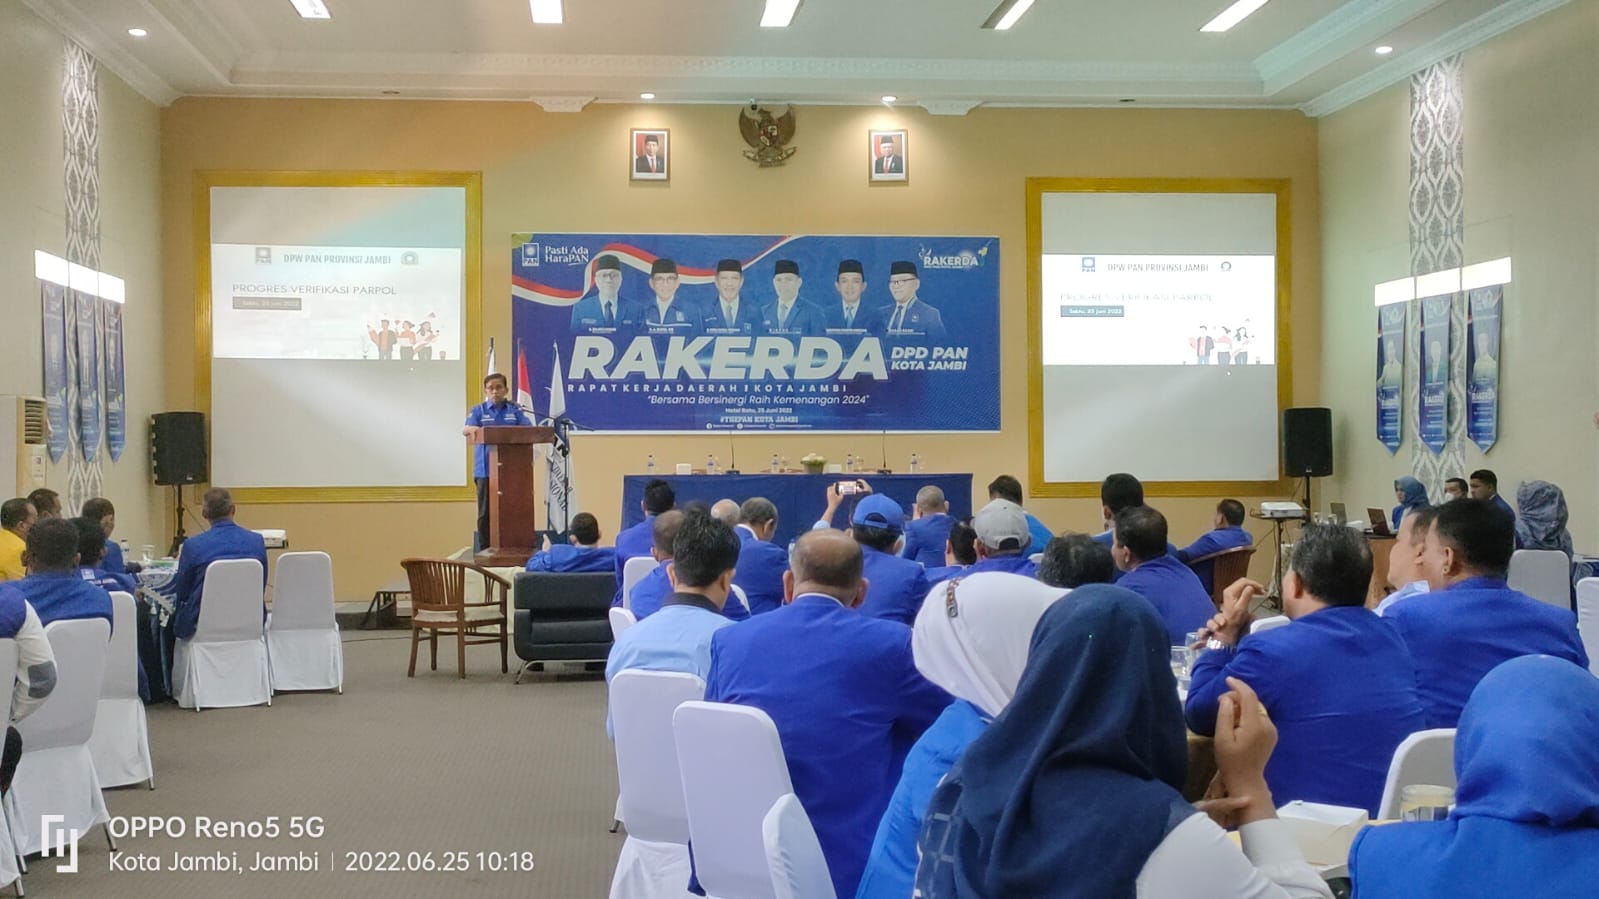 H Bakri Sambutan di Acara Rakerda DPD PAN Kota Jambi